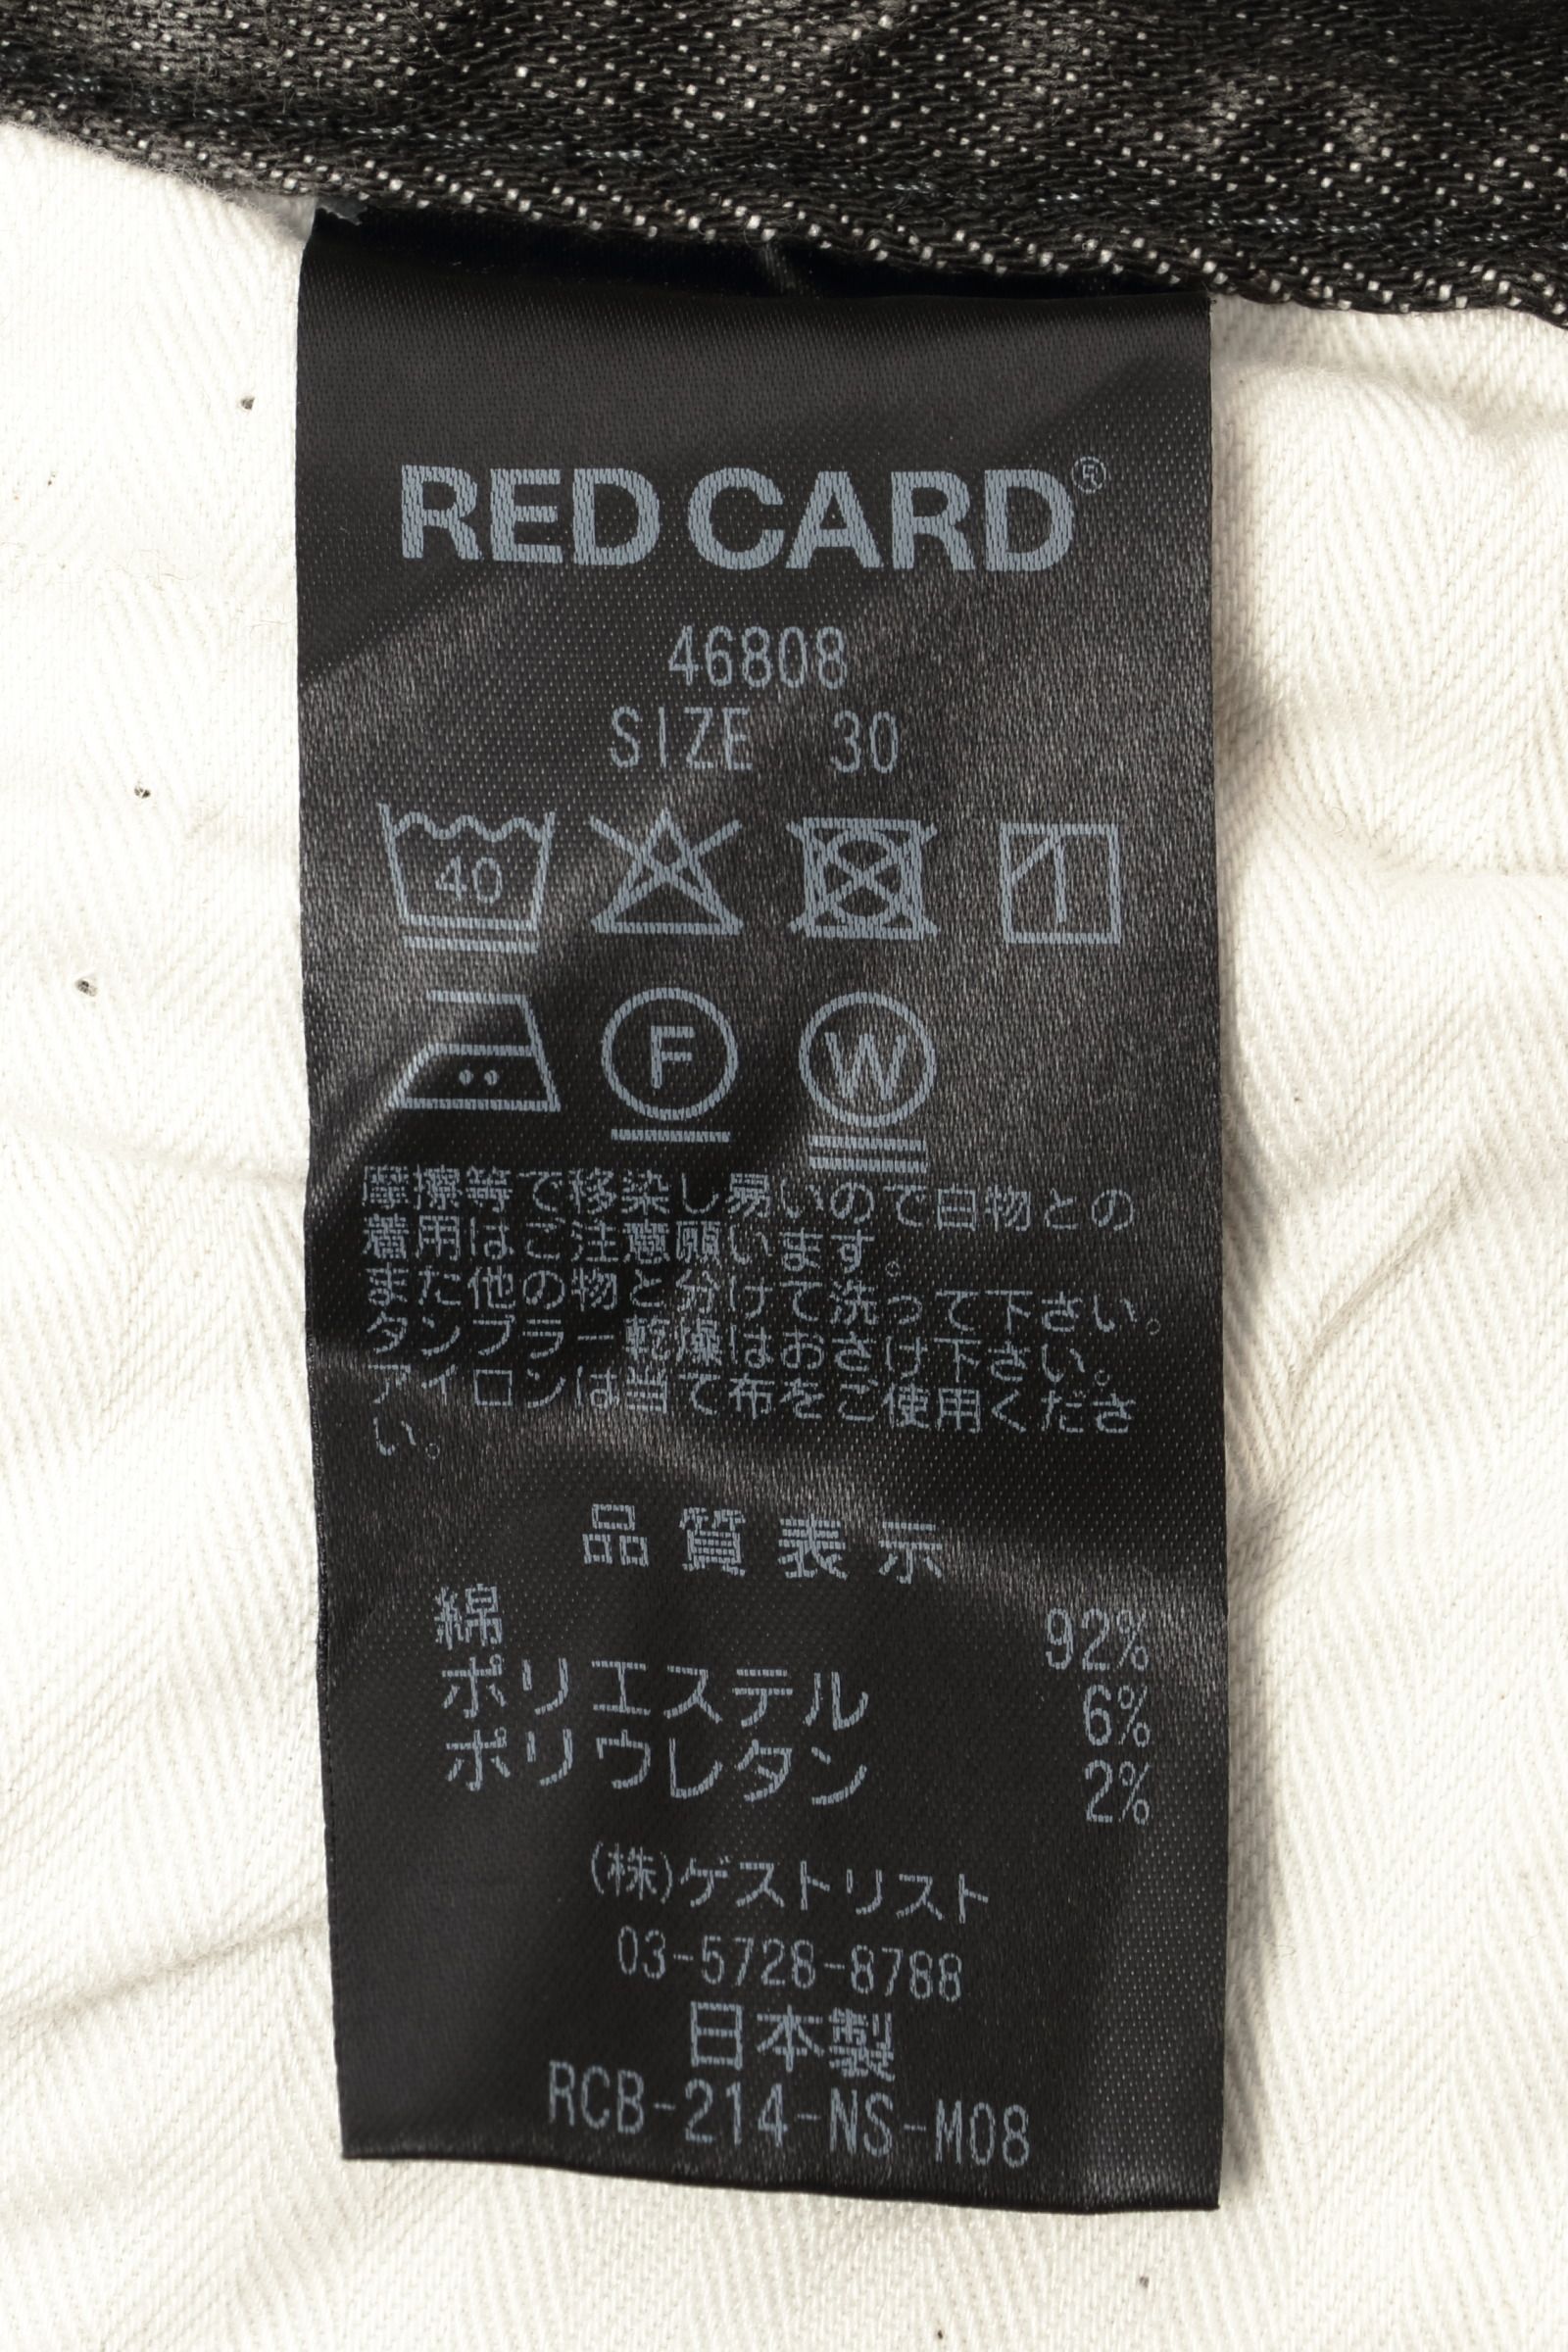 RED CARD - Day1 スウェットライクデニム素材 リラックス スキニー